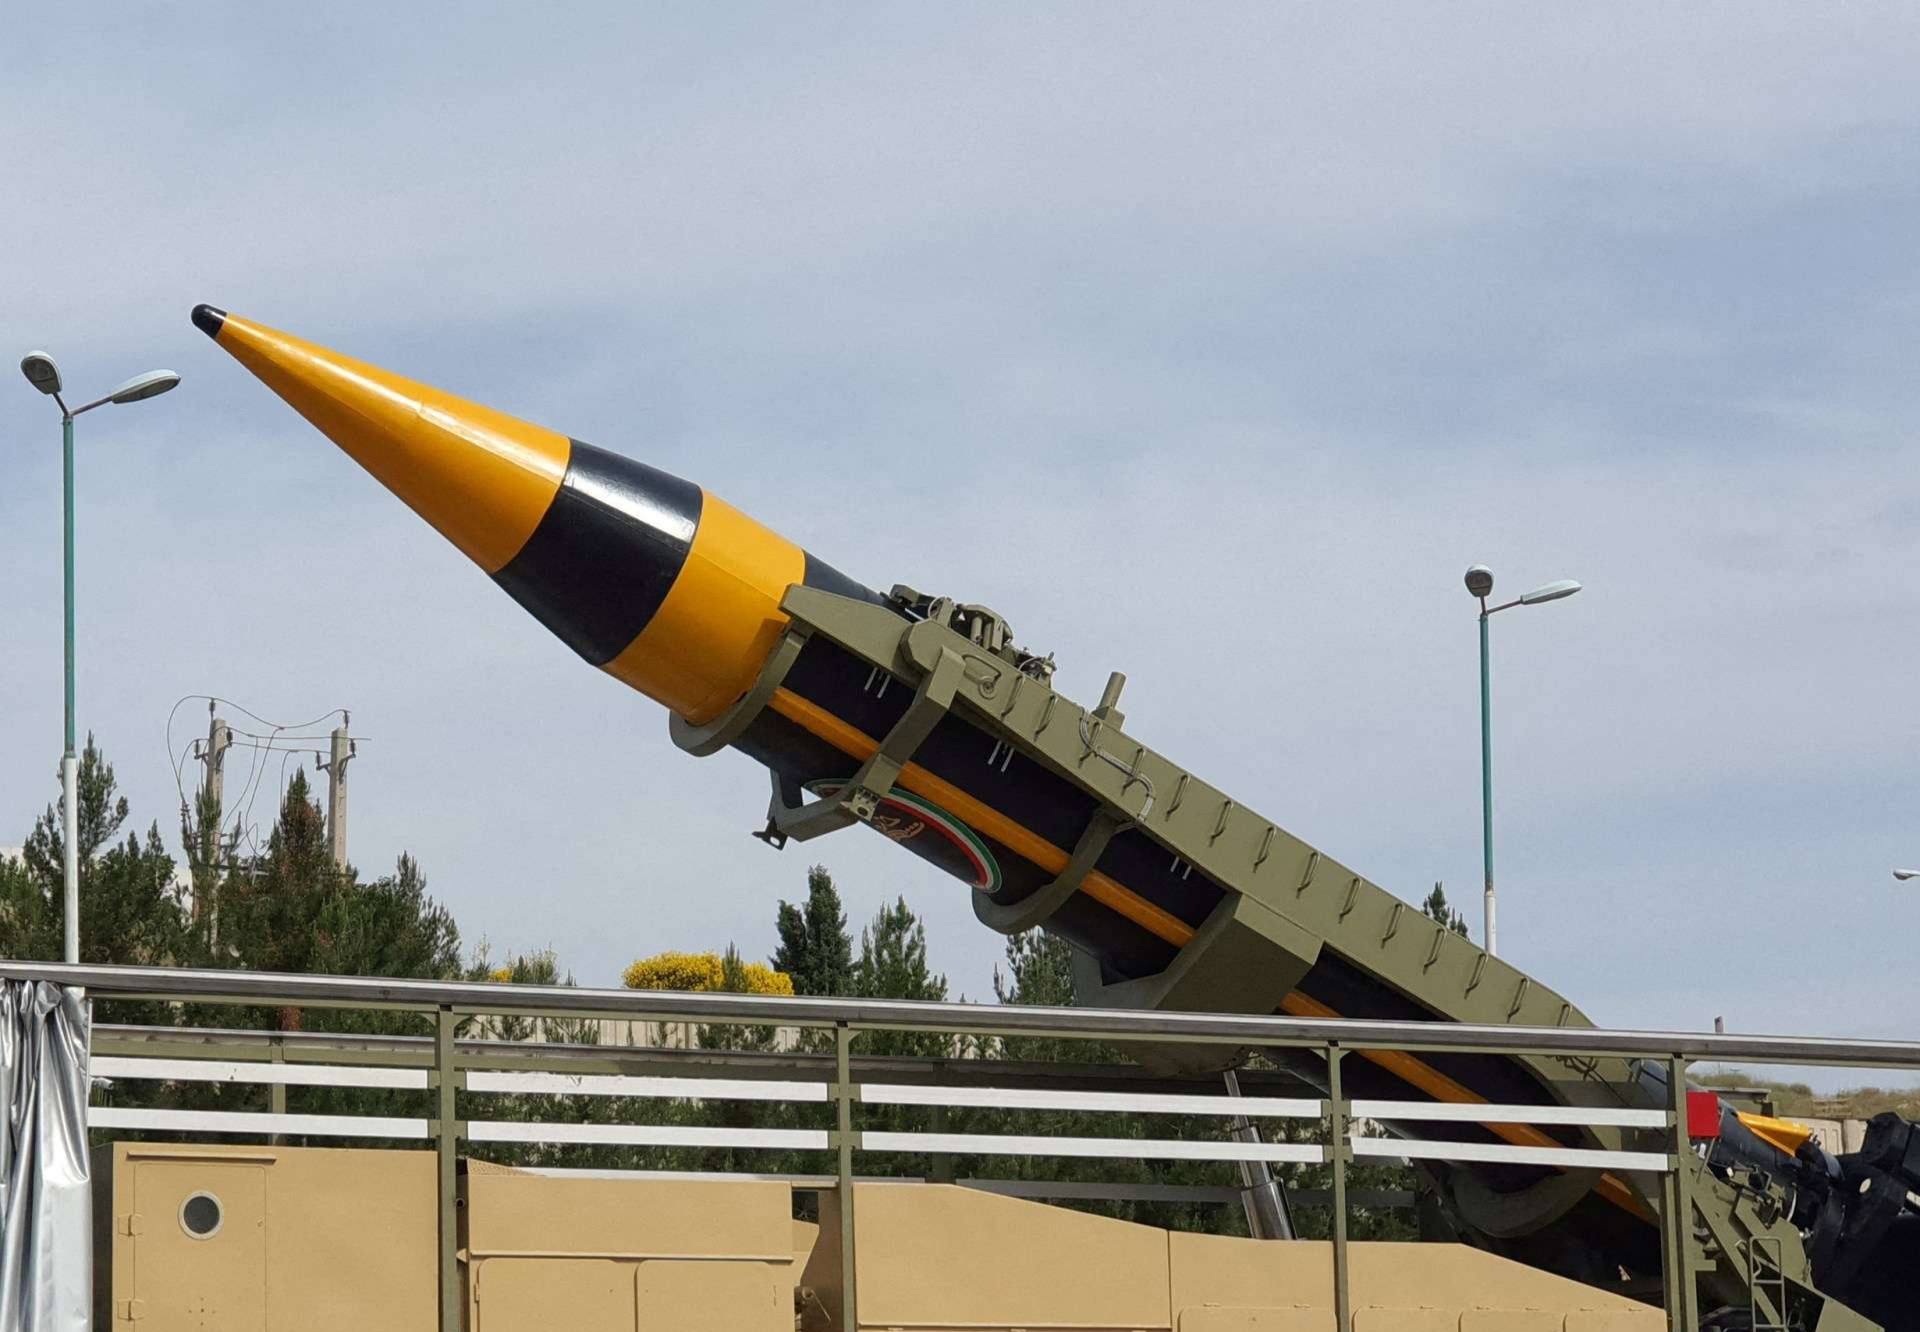 إيران تزود الحوثيين بصاروخ باليستي “مضاد للغواصات” يطلق من البحر.. ما هو هذا الصاروخ؟